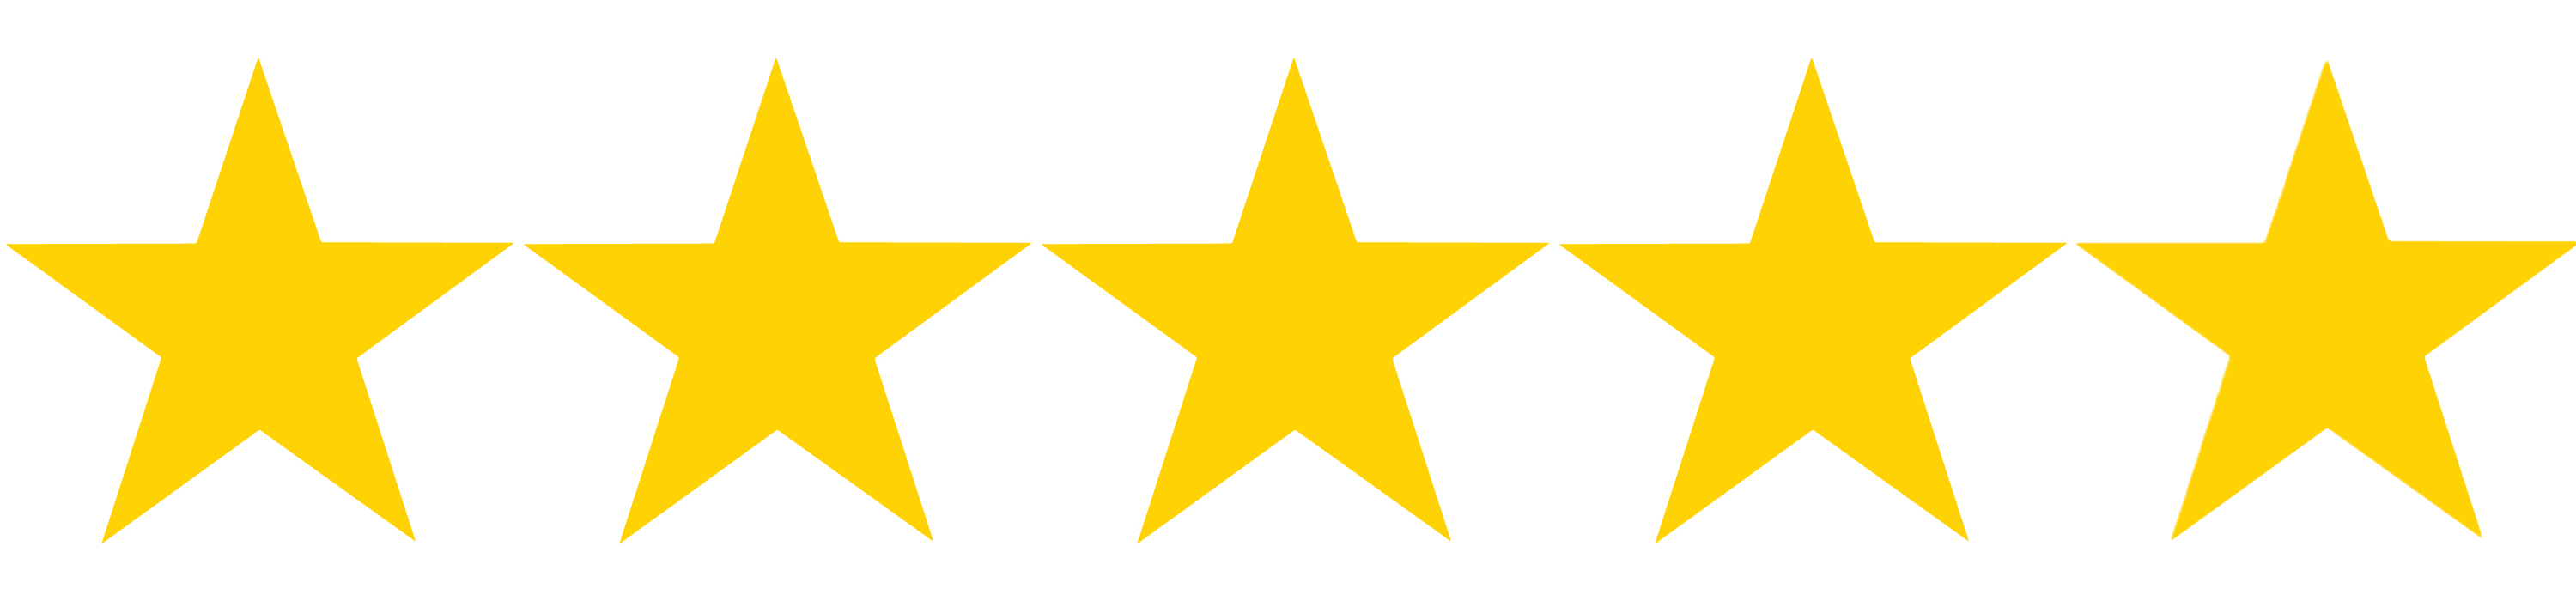 five stars